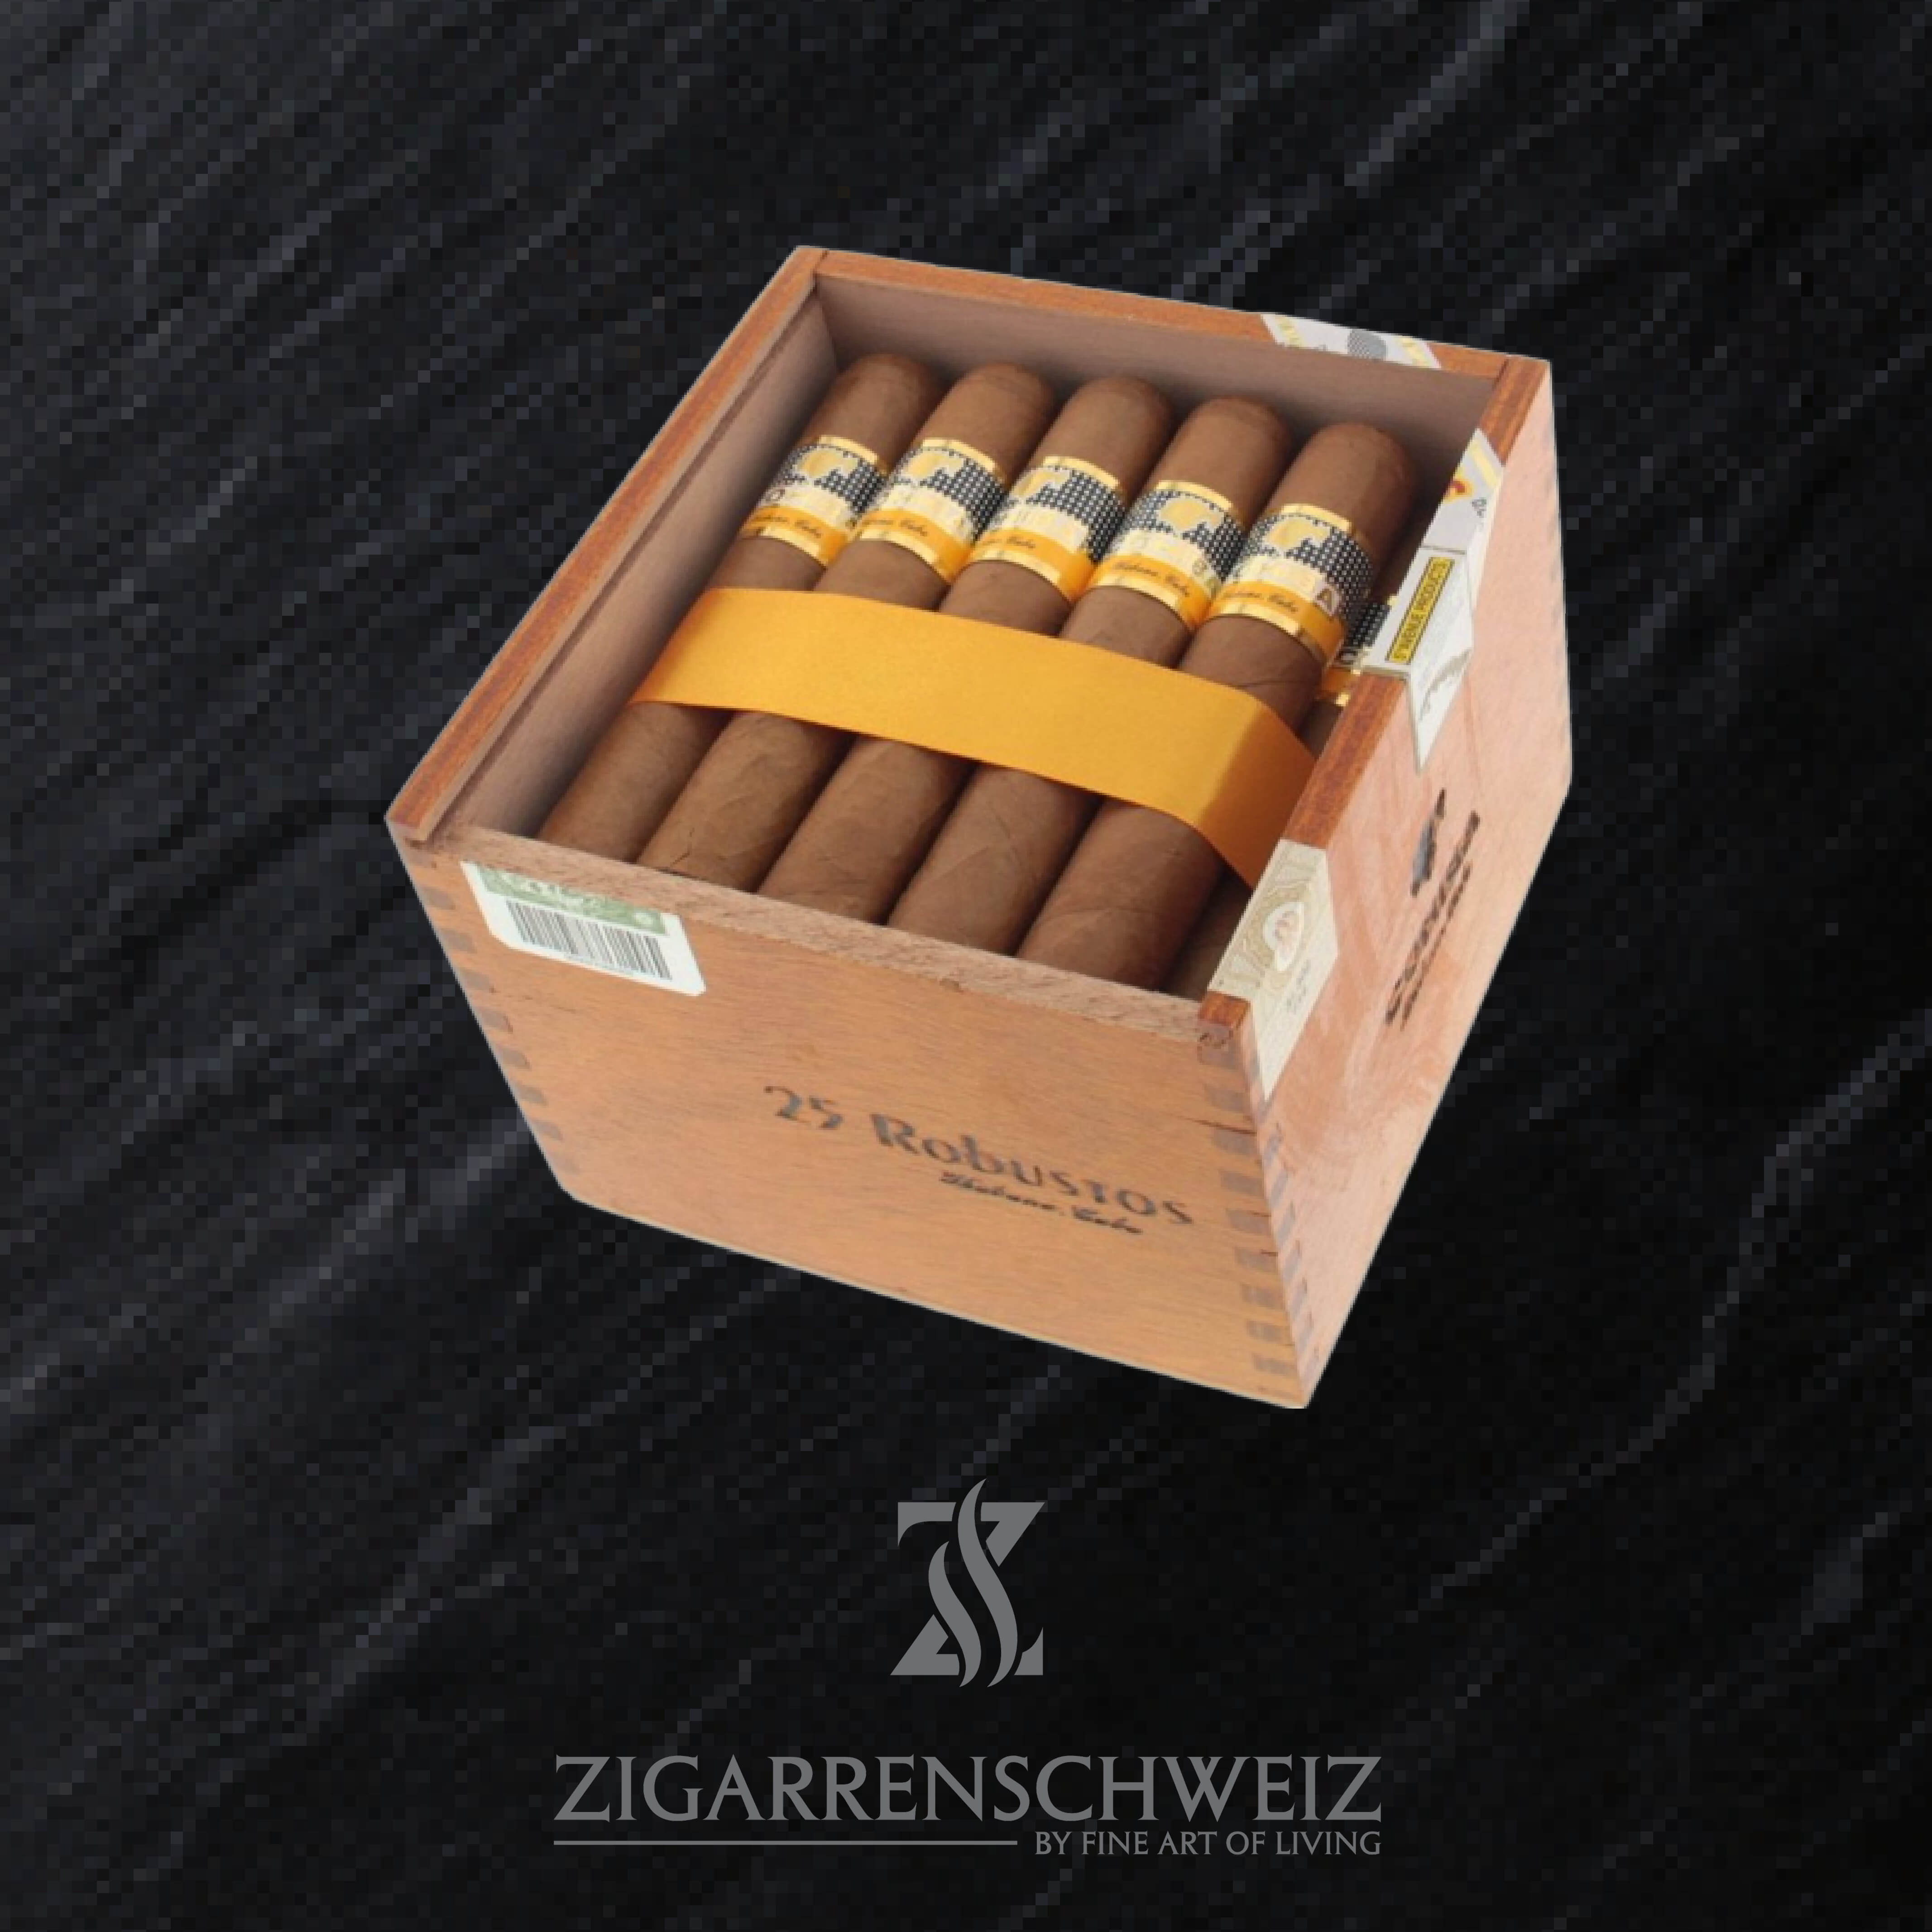 Zigarren, Rauchen, Genussmittel, Genuss, Sucht, Luxus, Tabak, Cohiba,  Kubanische, Kiste, Zigarrenkiste, Zigarre, Droge, Drogen Stock Photo - Alamy